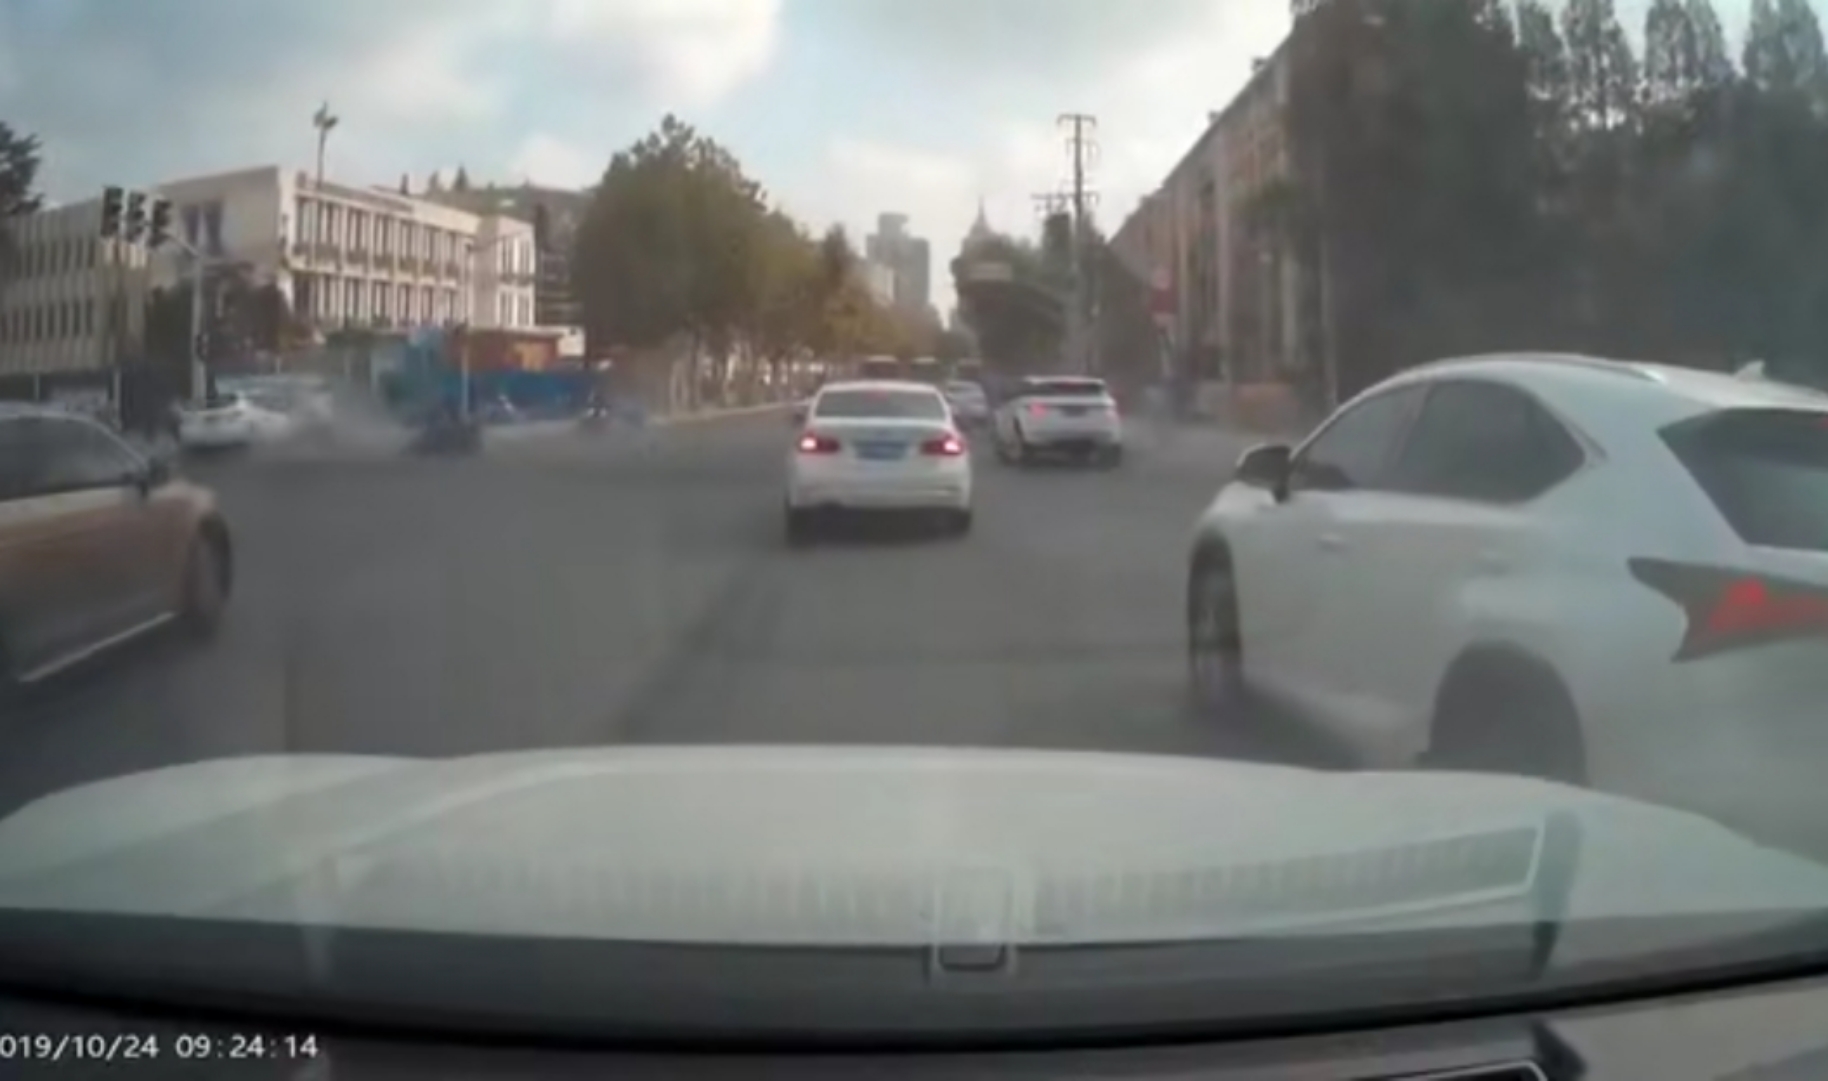  轿车行车记录仪显示，一辆白色轿车快速横穿路口与多车相撞。现场视频截图